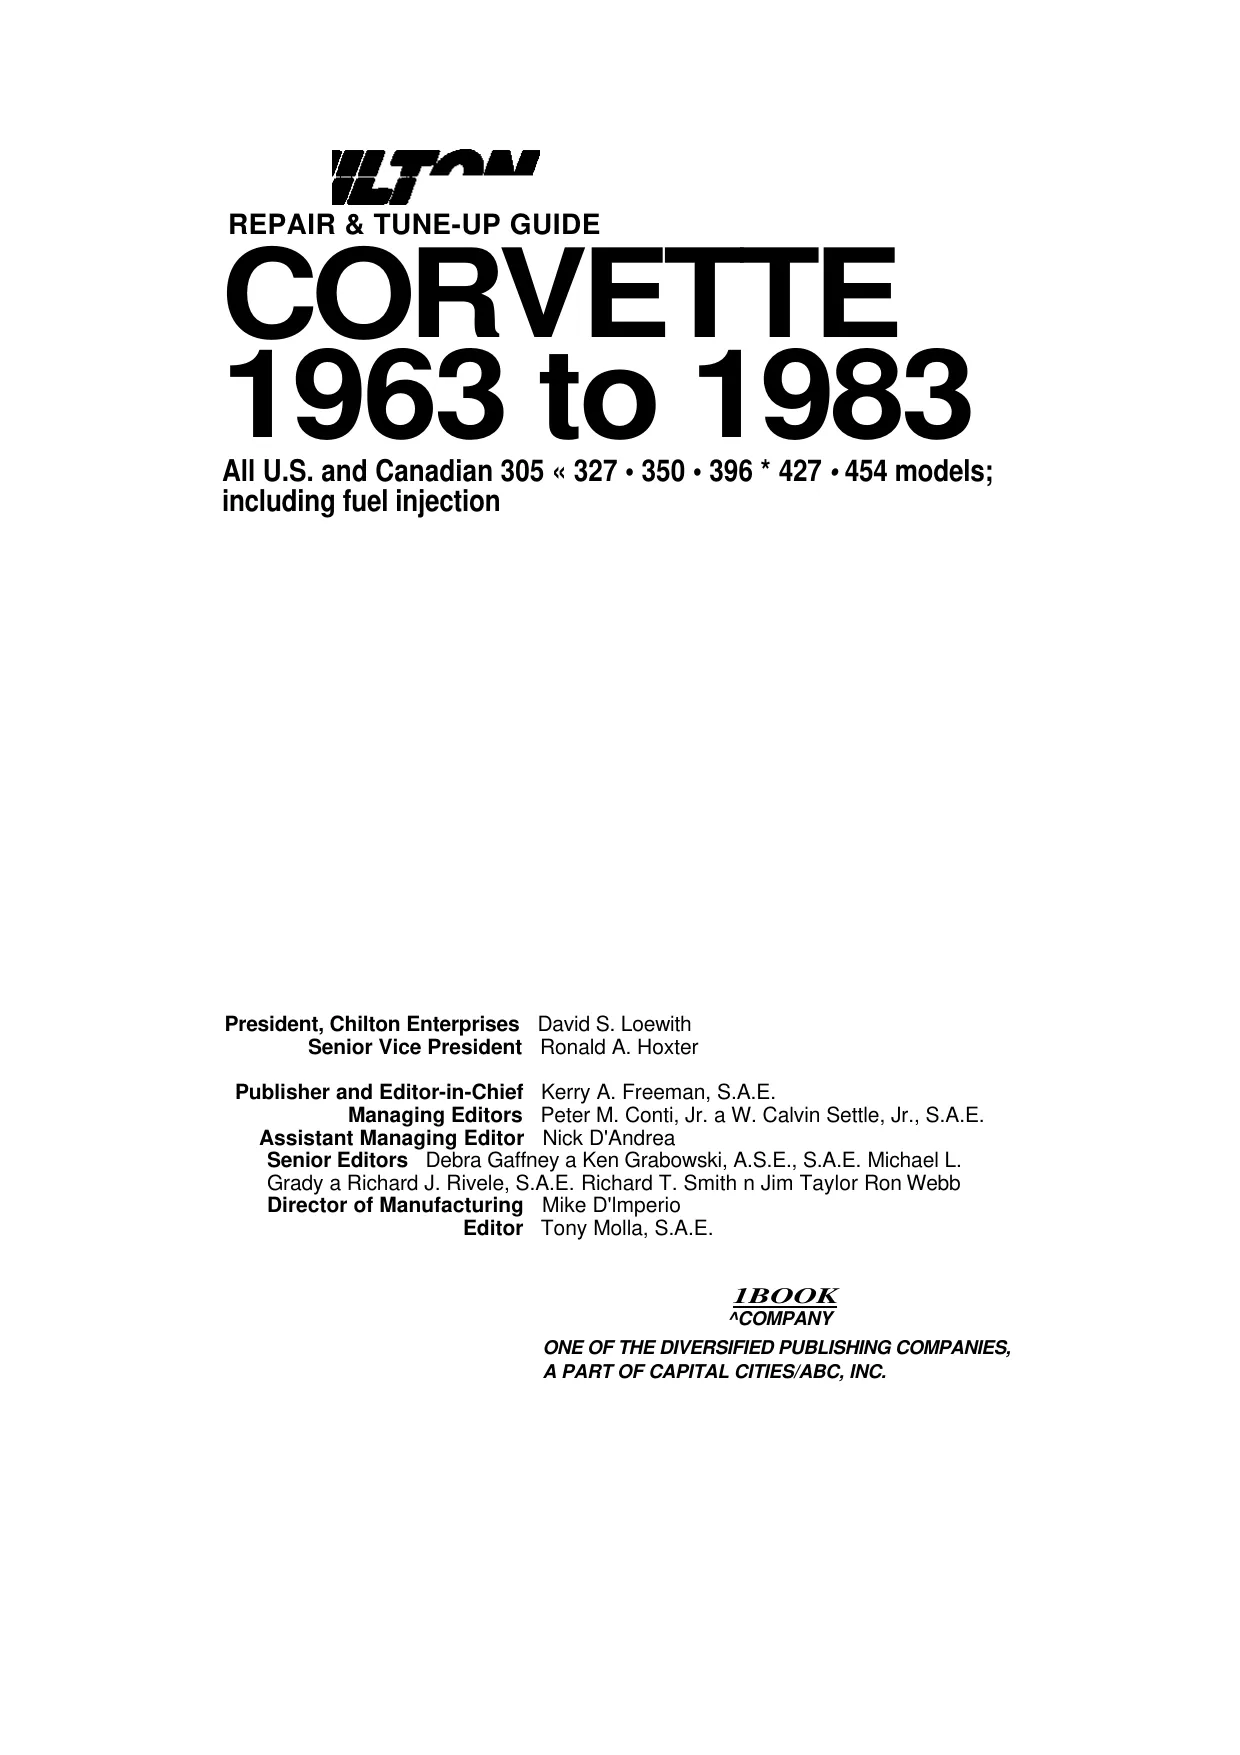 1968-1982 Chevrolet Corvette service repair manual